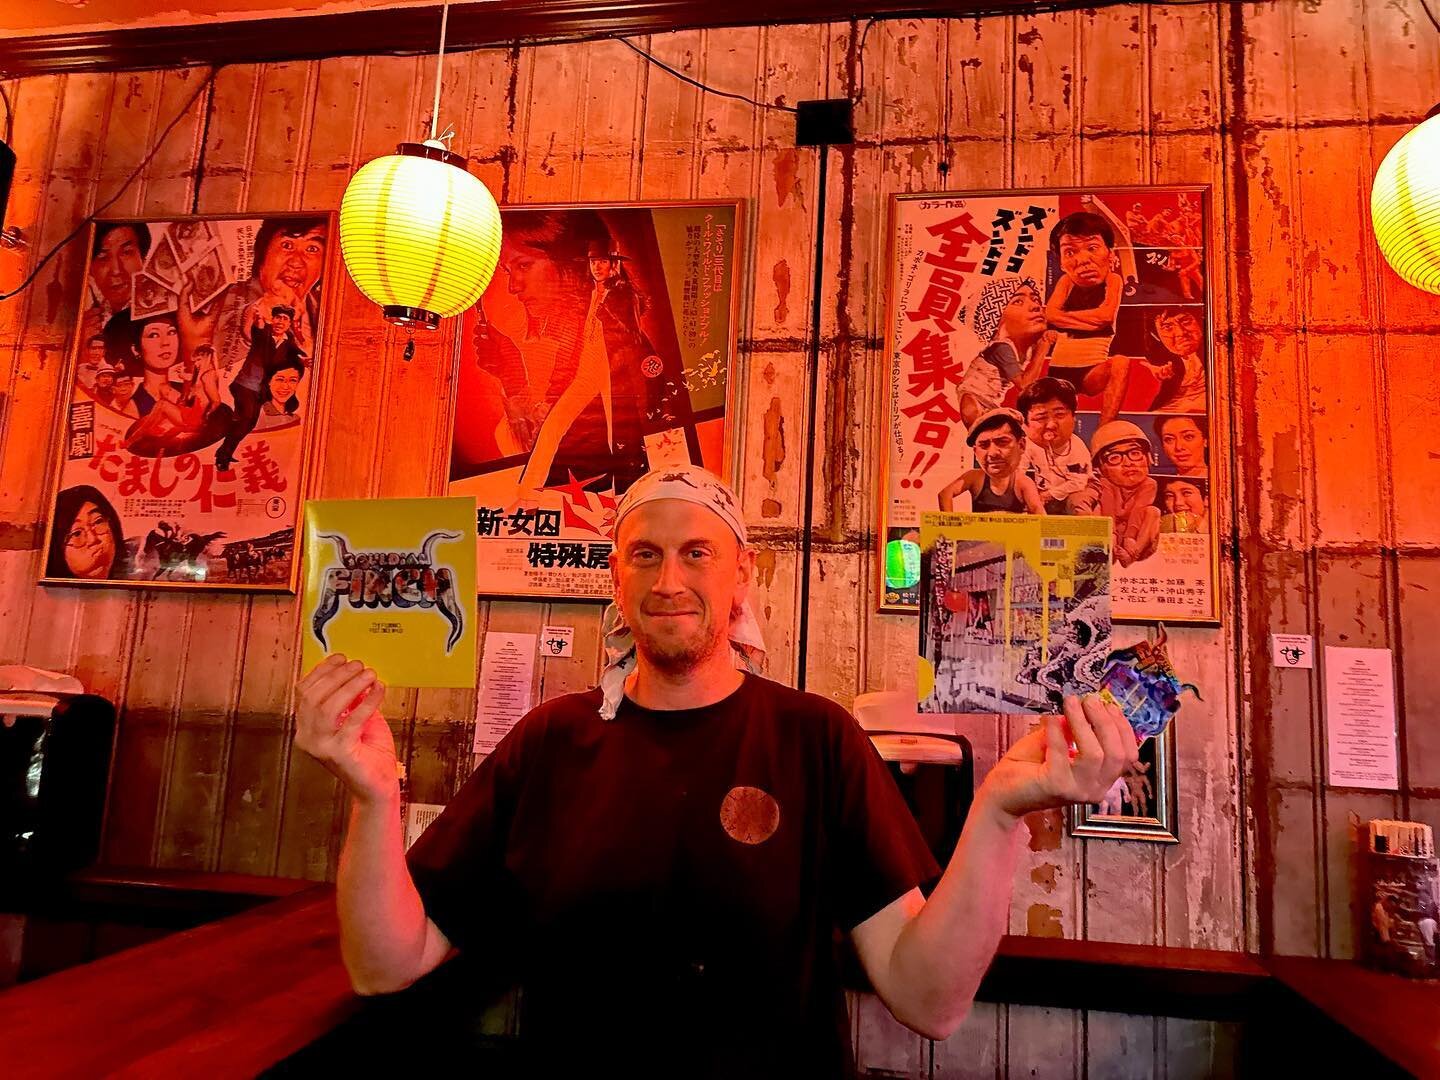 Mr. Koniji in his bar / location / album cover